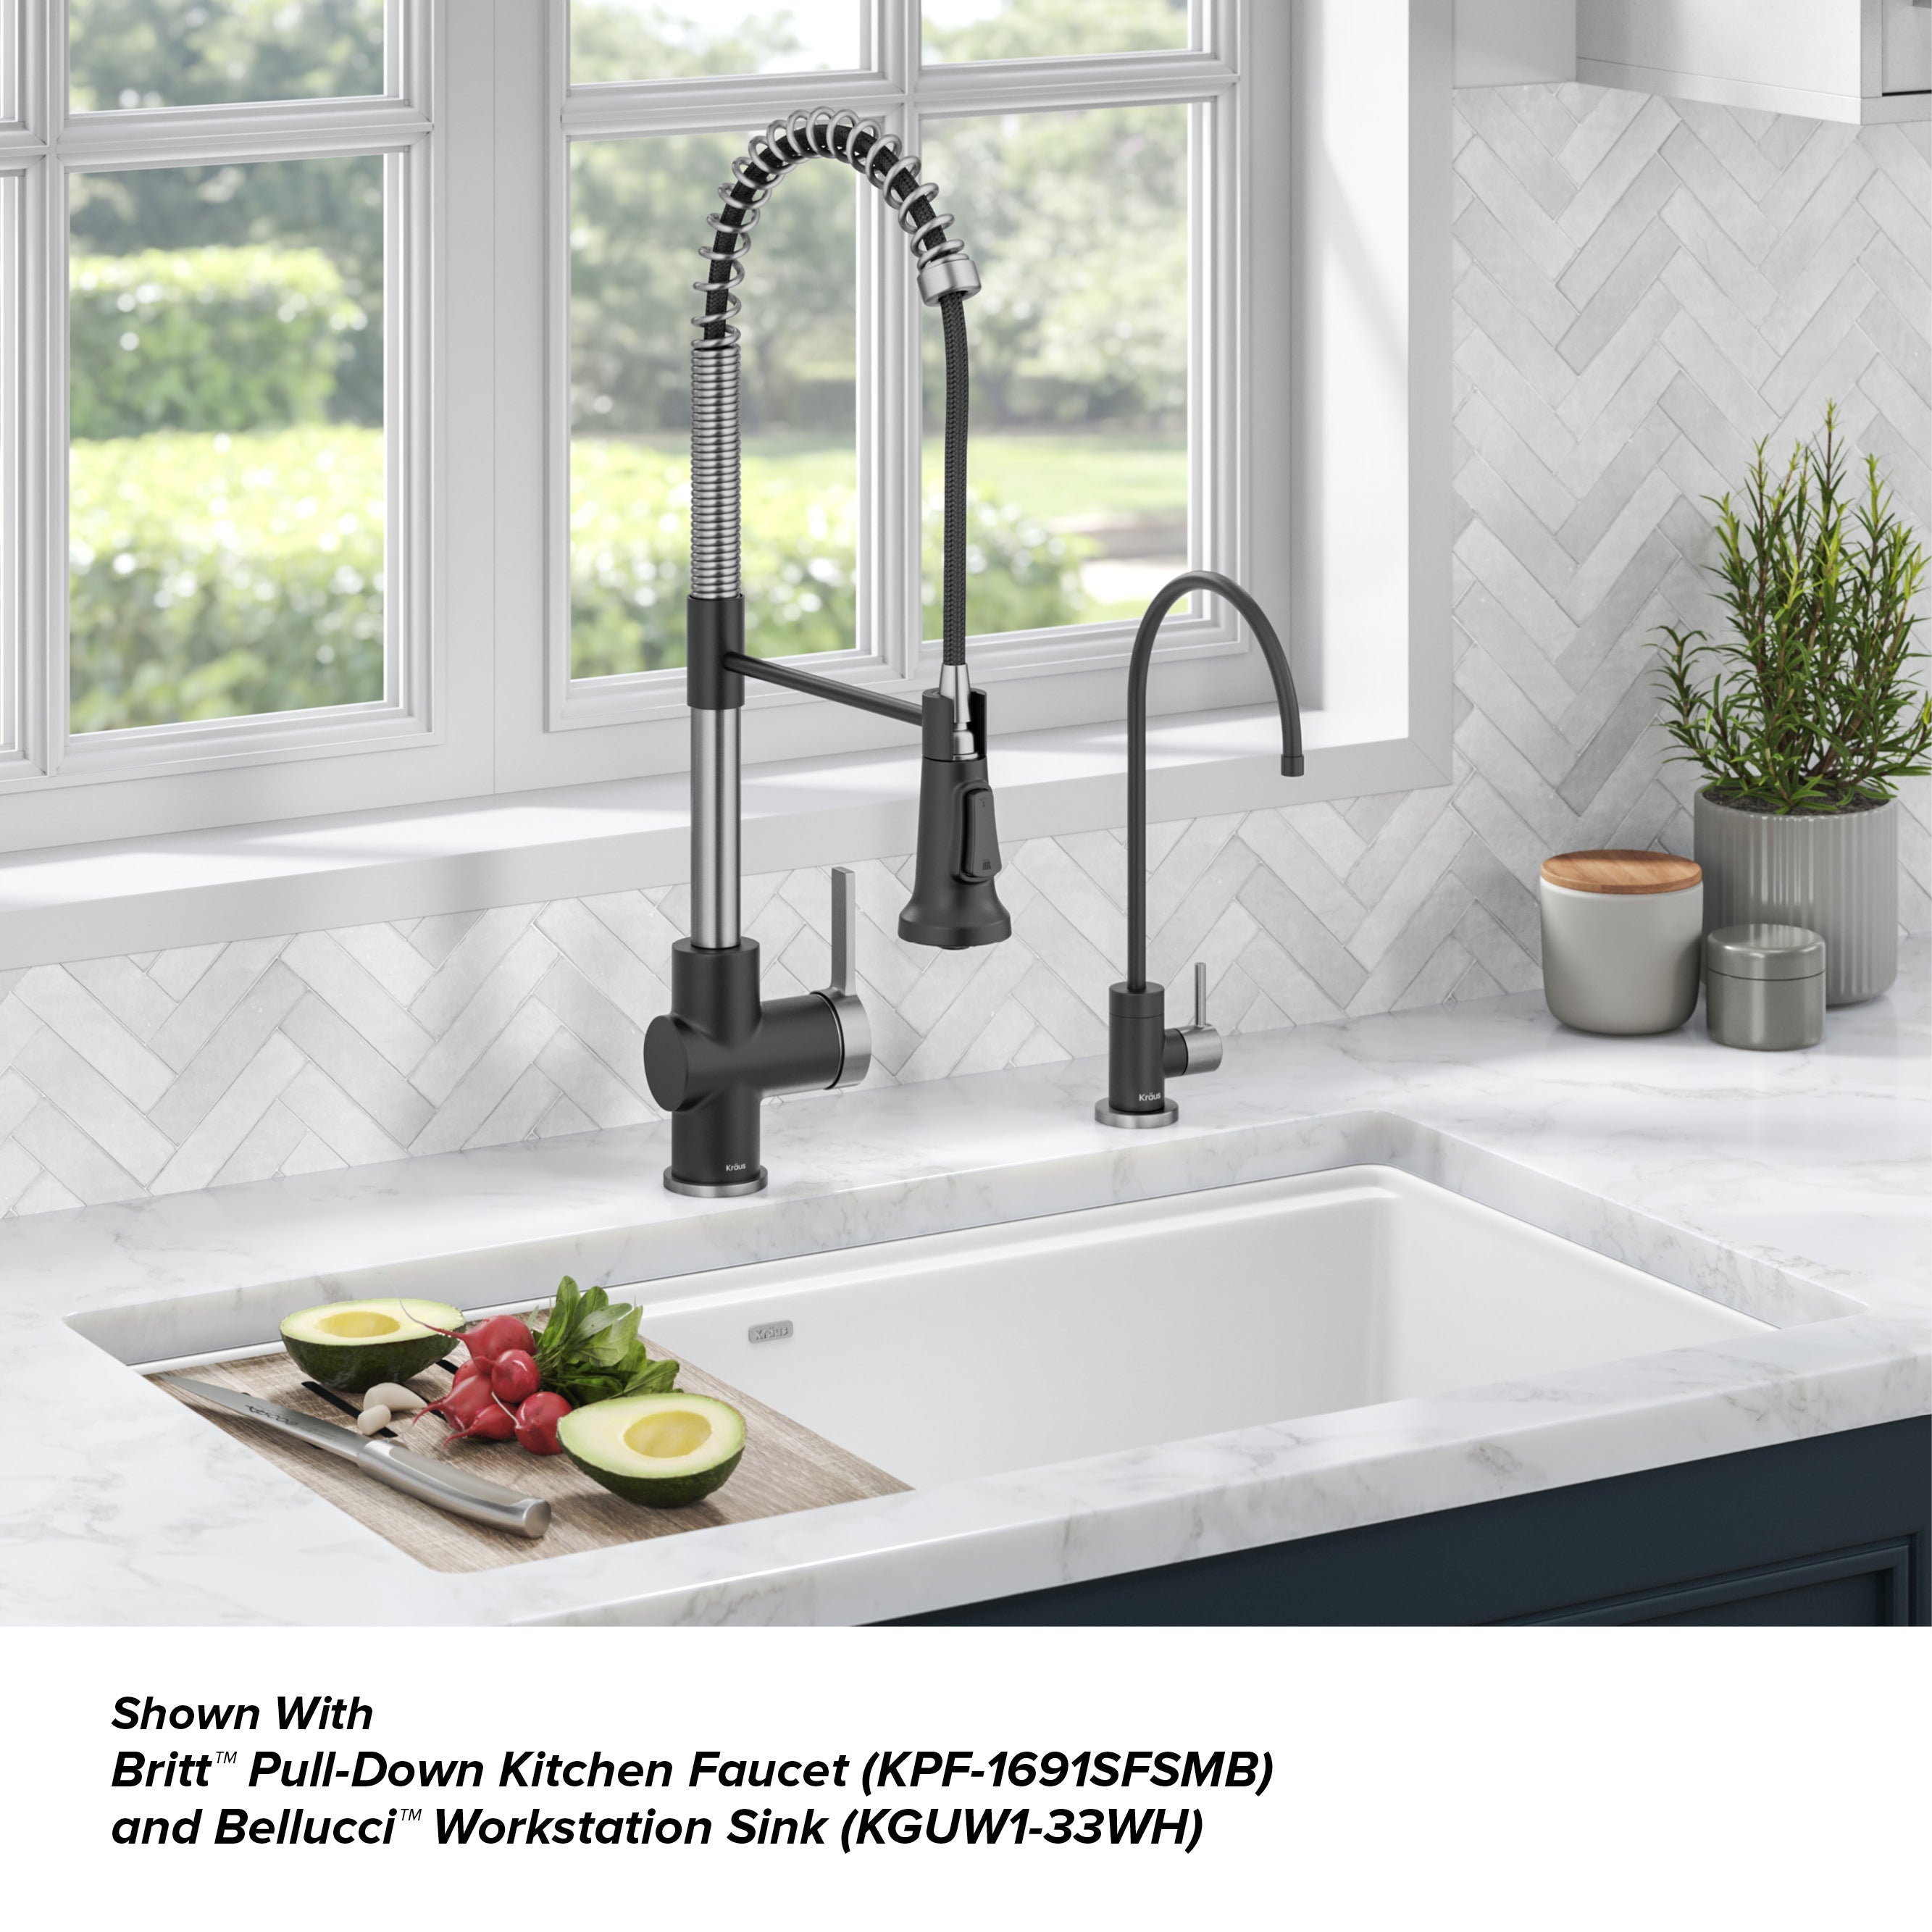 KRAUS Purita 100% Lead-Free Kitchen Water Filter Faucet in Spot Free Stainless & Matte Black